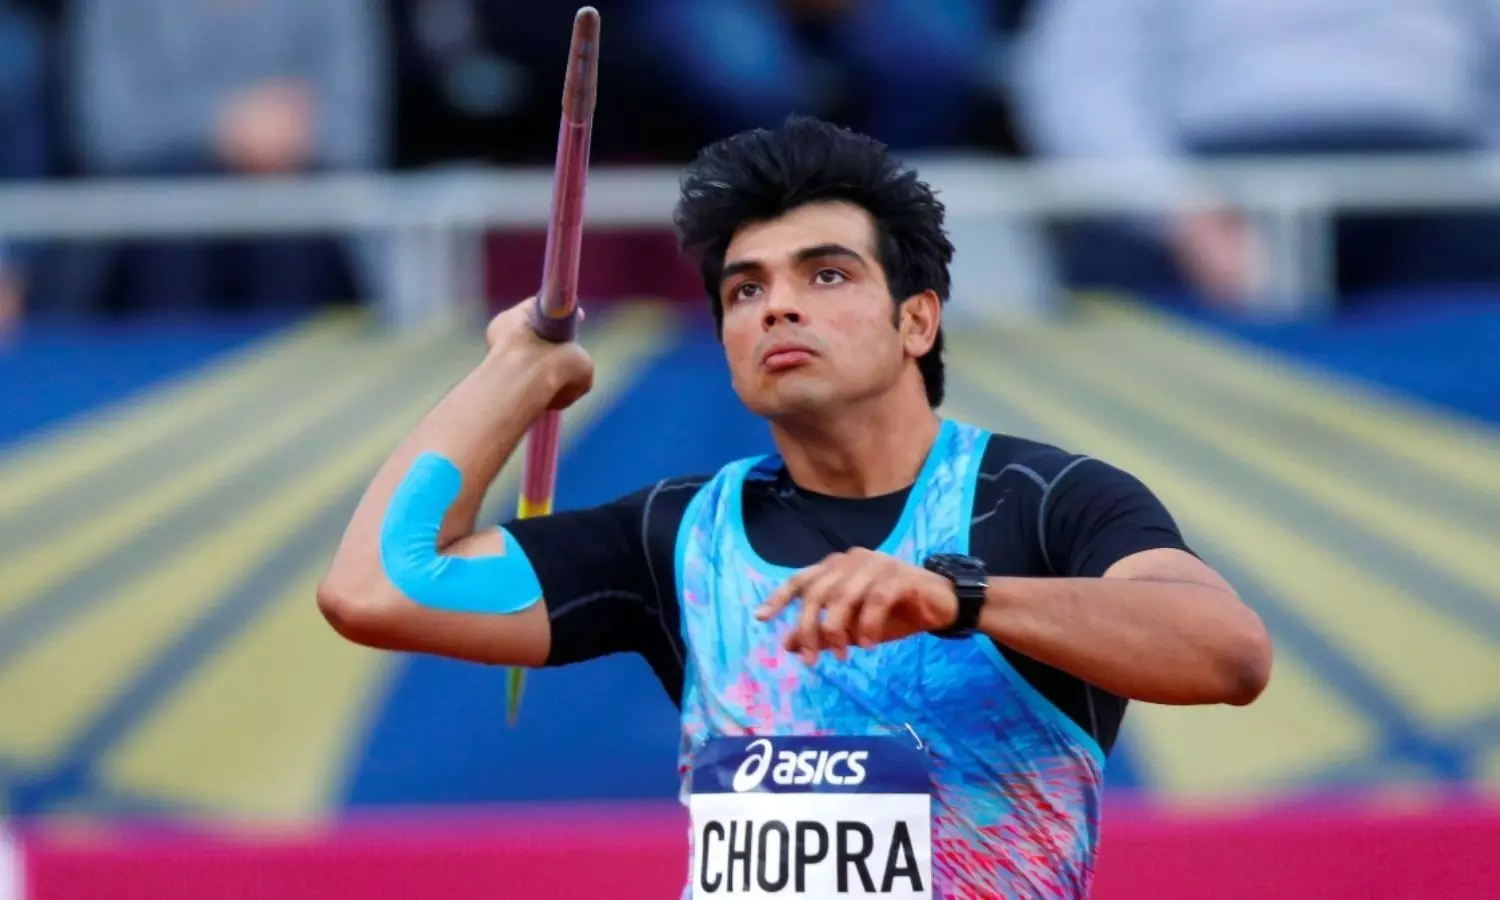 Neeraj Chopra as India's strongest medal hope in Tokyo Olympics 2020